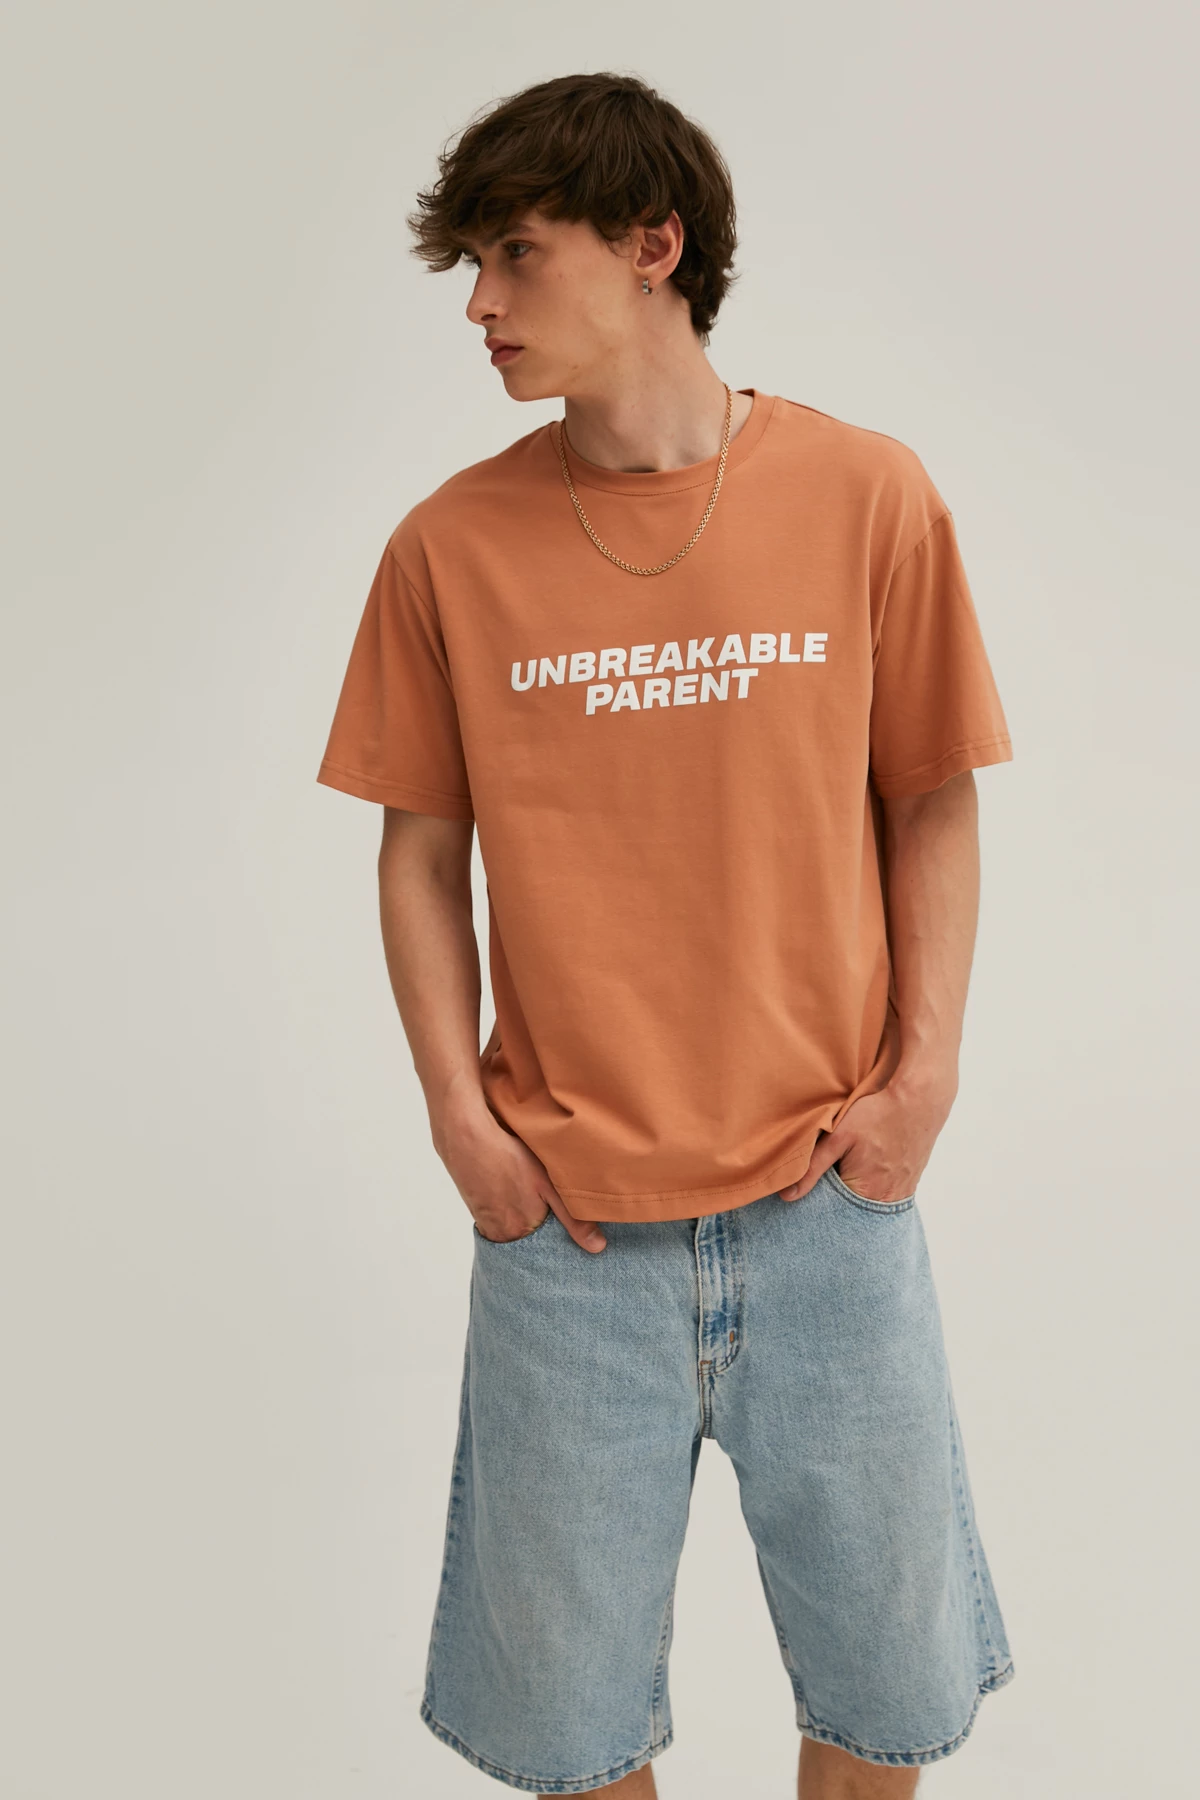 Карамельна унісекс-футболка з написом "Unbreakable parent" з трикотажу, фото 2